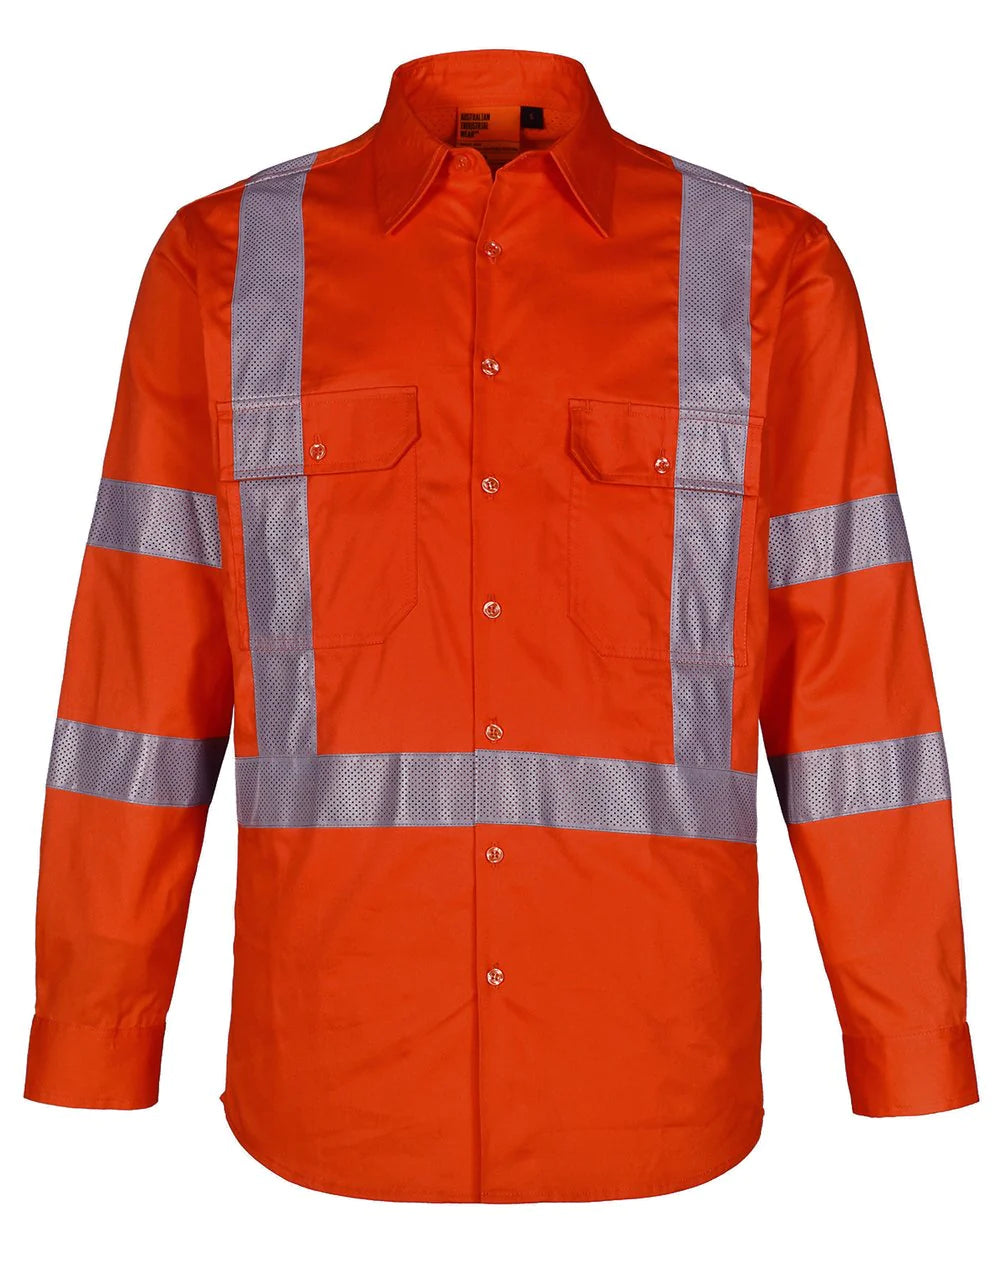 Winning Spirit NSW Rail Lightweight Safety Shirt (SW66)